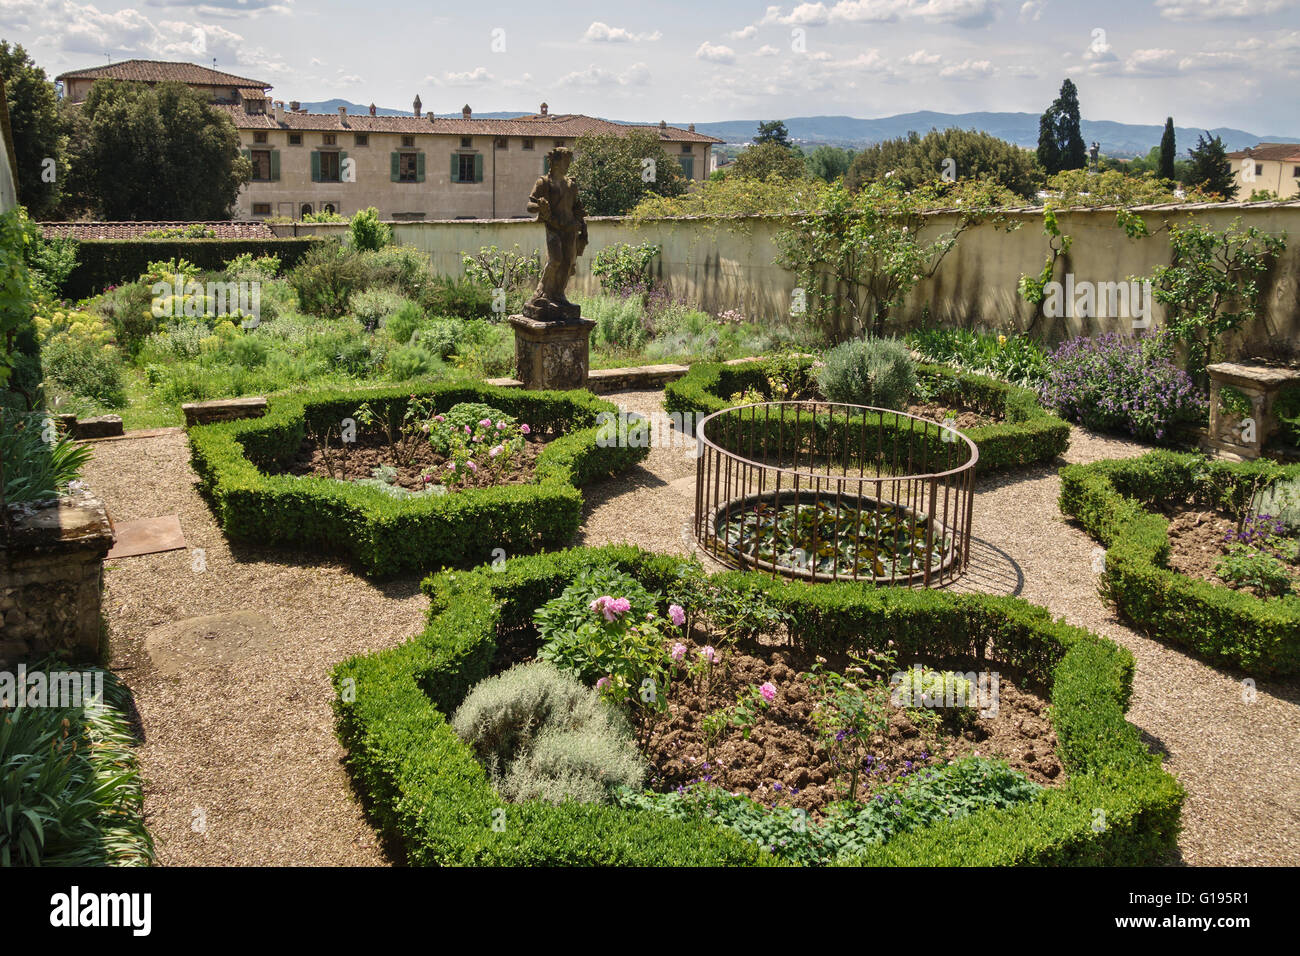 Villa di Castello (Villa Reale), près de Florence, en Italie. L'ortaccio (jardin des simples) pour les médicaments et plantes exotiques Banque D'Images